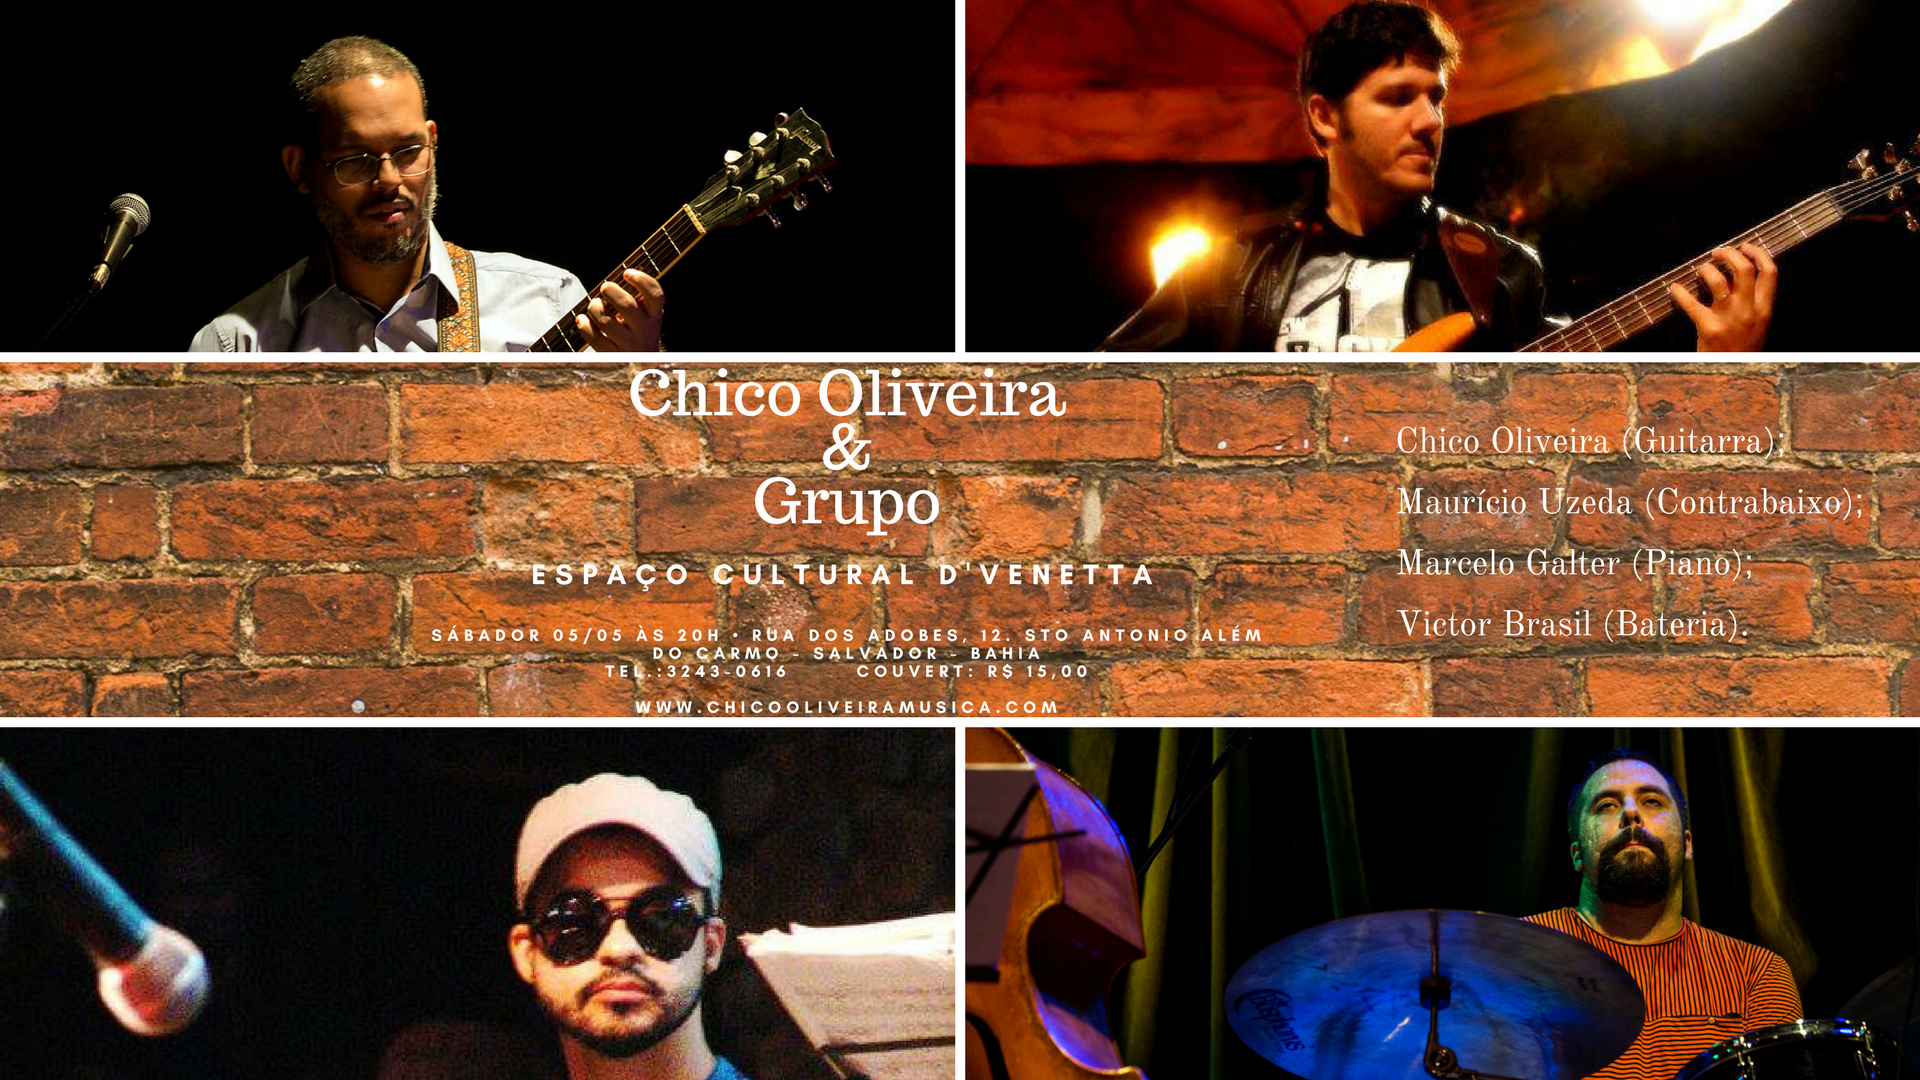 Chico Oliveira e grupo no D'Venetta, com Mauricio Uzeda,  Marcelo Galter e Victor Brasil